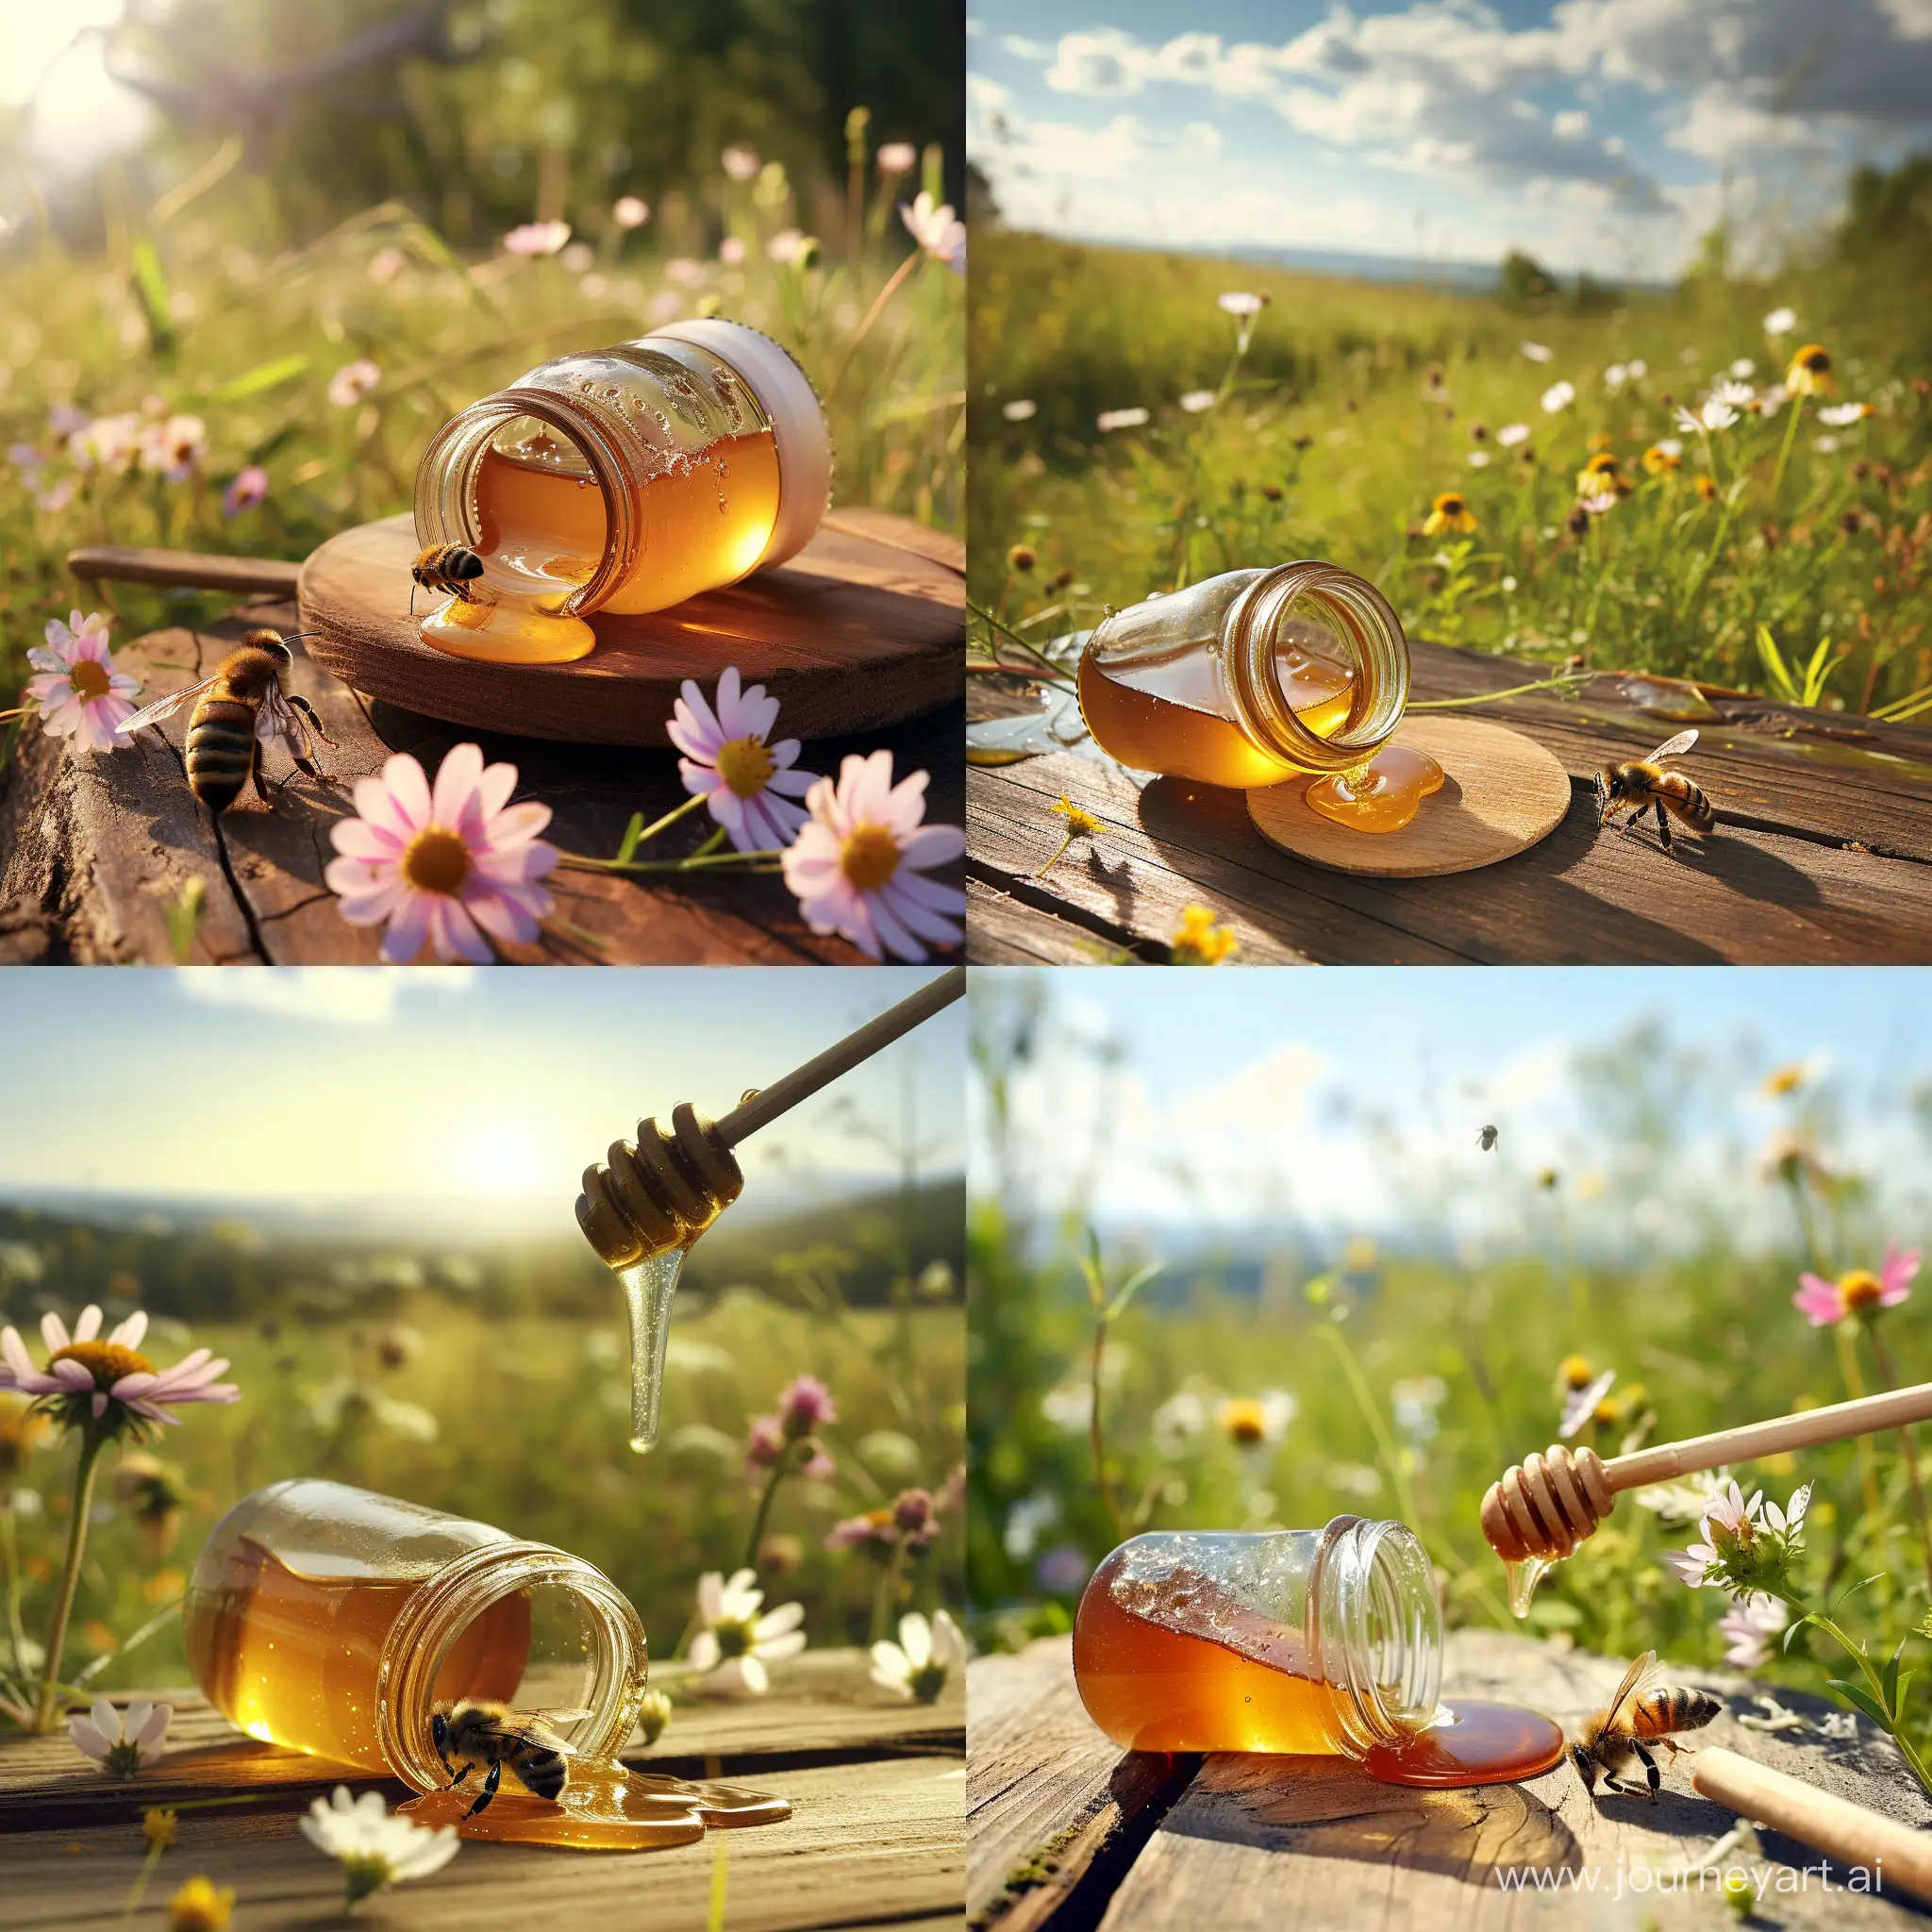 Honeybee-Collecting-Spilled-Honey-in-Meadow-Scene